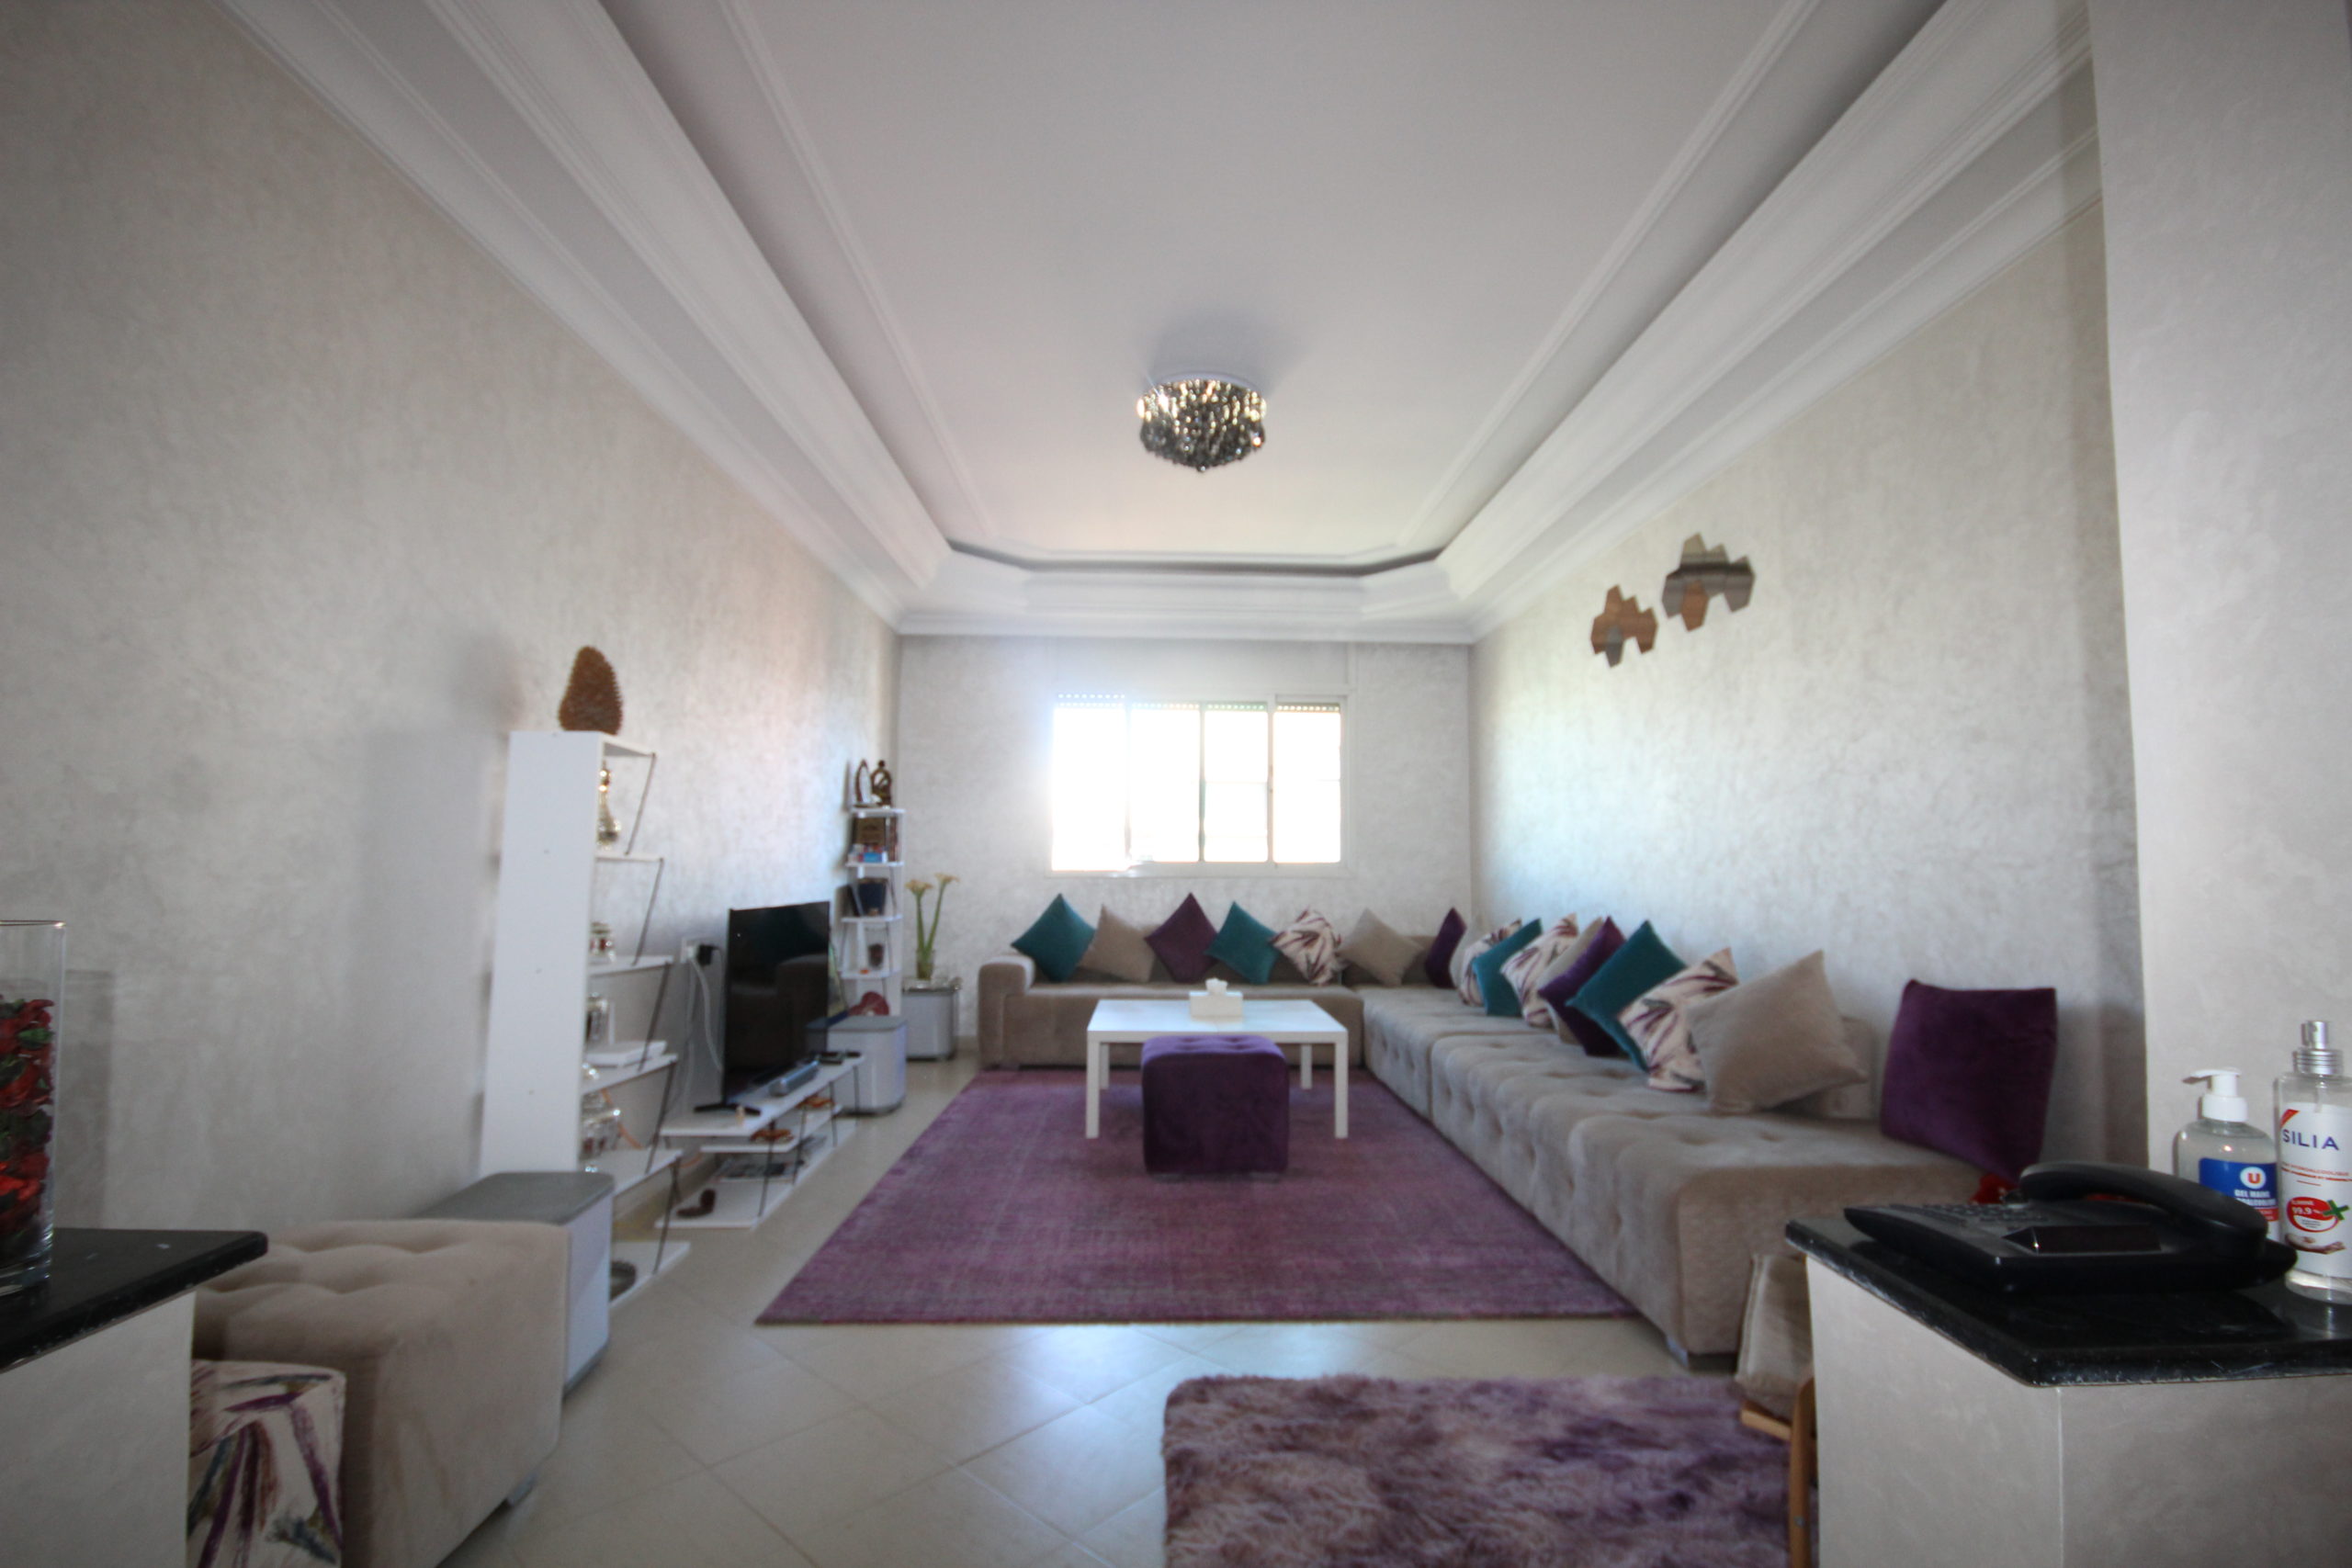 Casablanca Bel Appartement 3 ch sur Californie,  95 m² habitable, à très bon prix